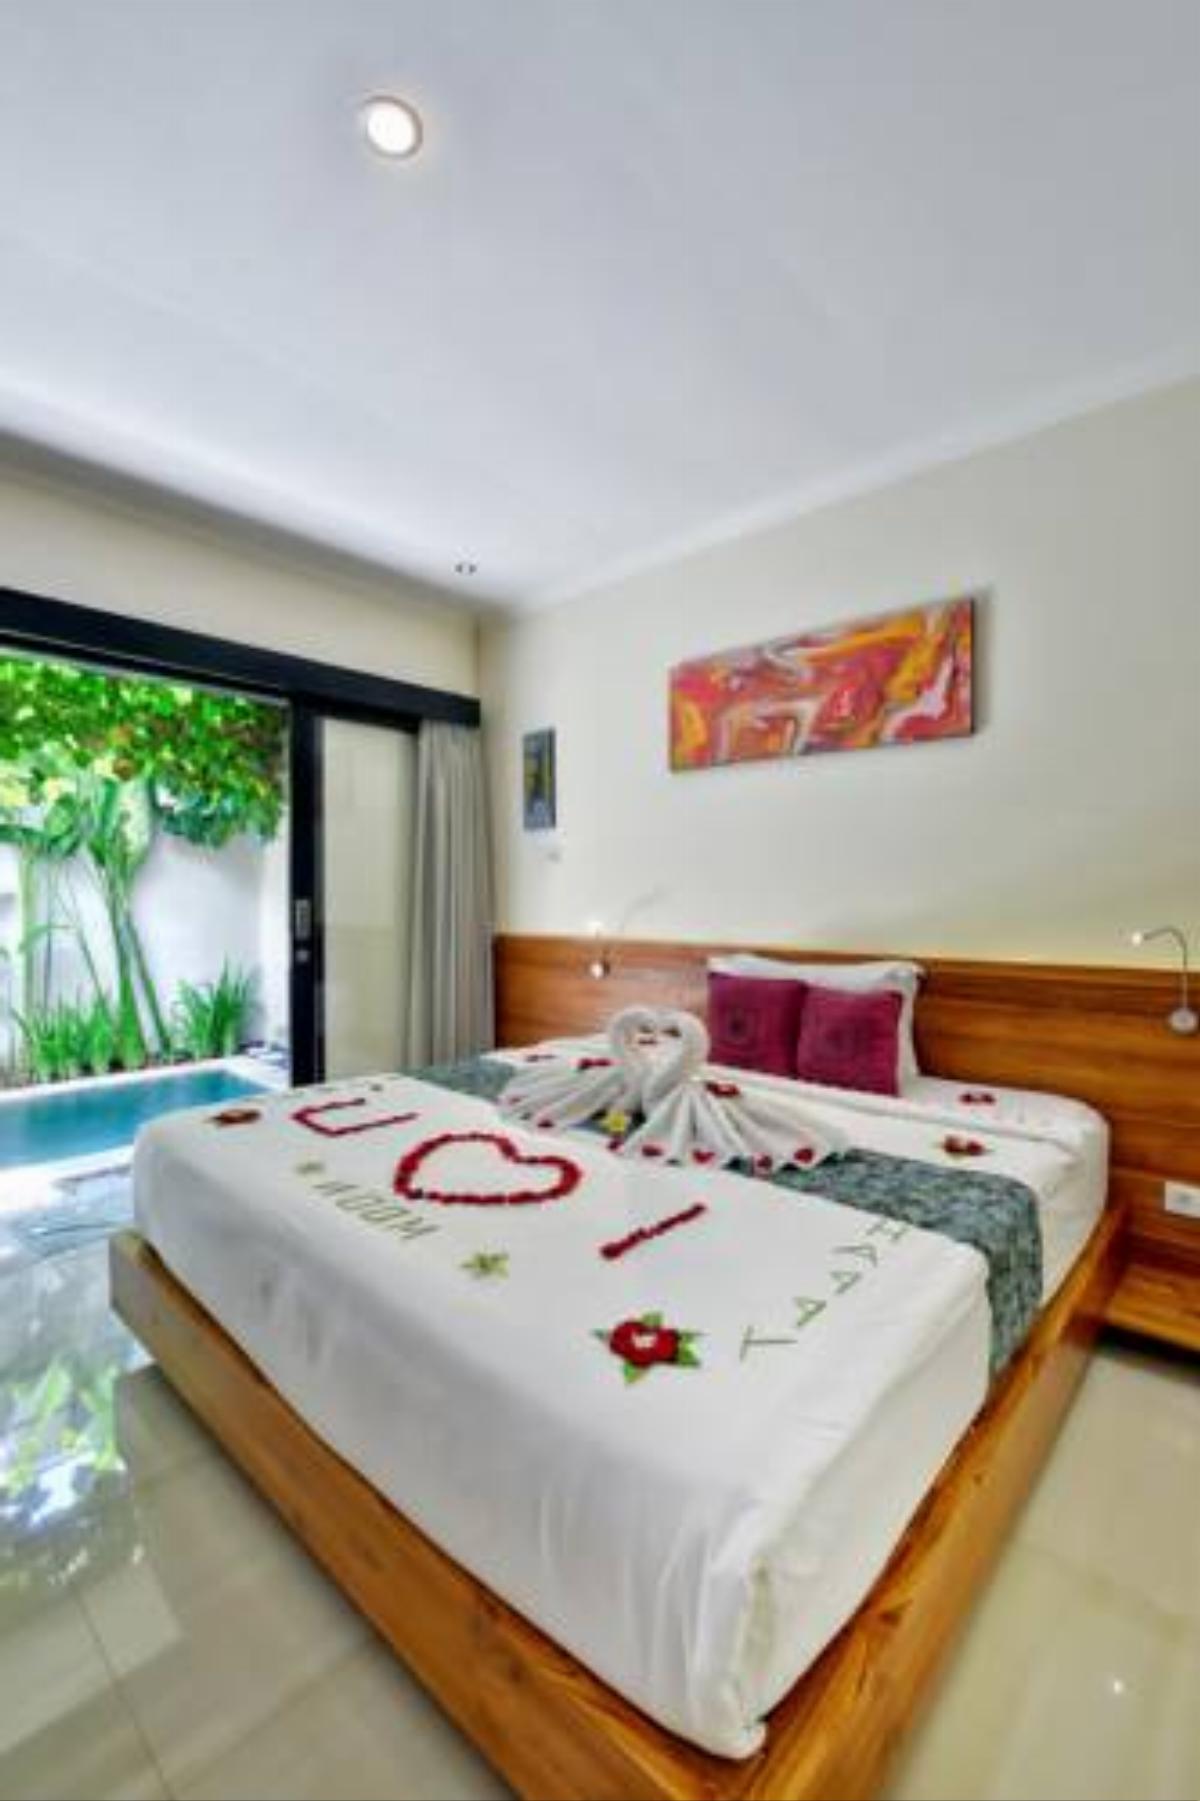 Bali Corail Villas Hotel Kerobokan Indonesia